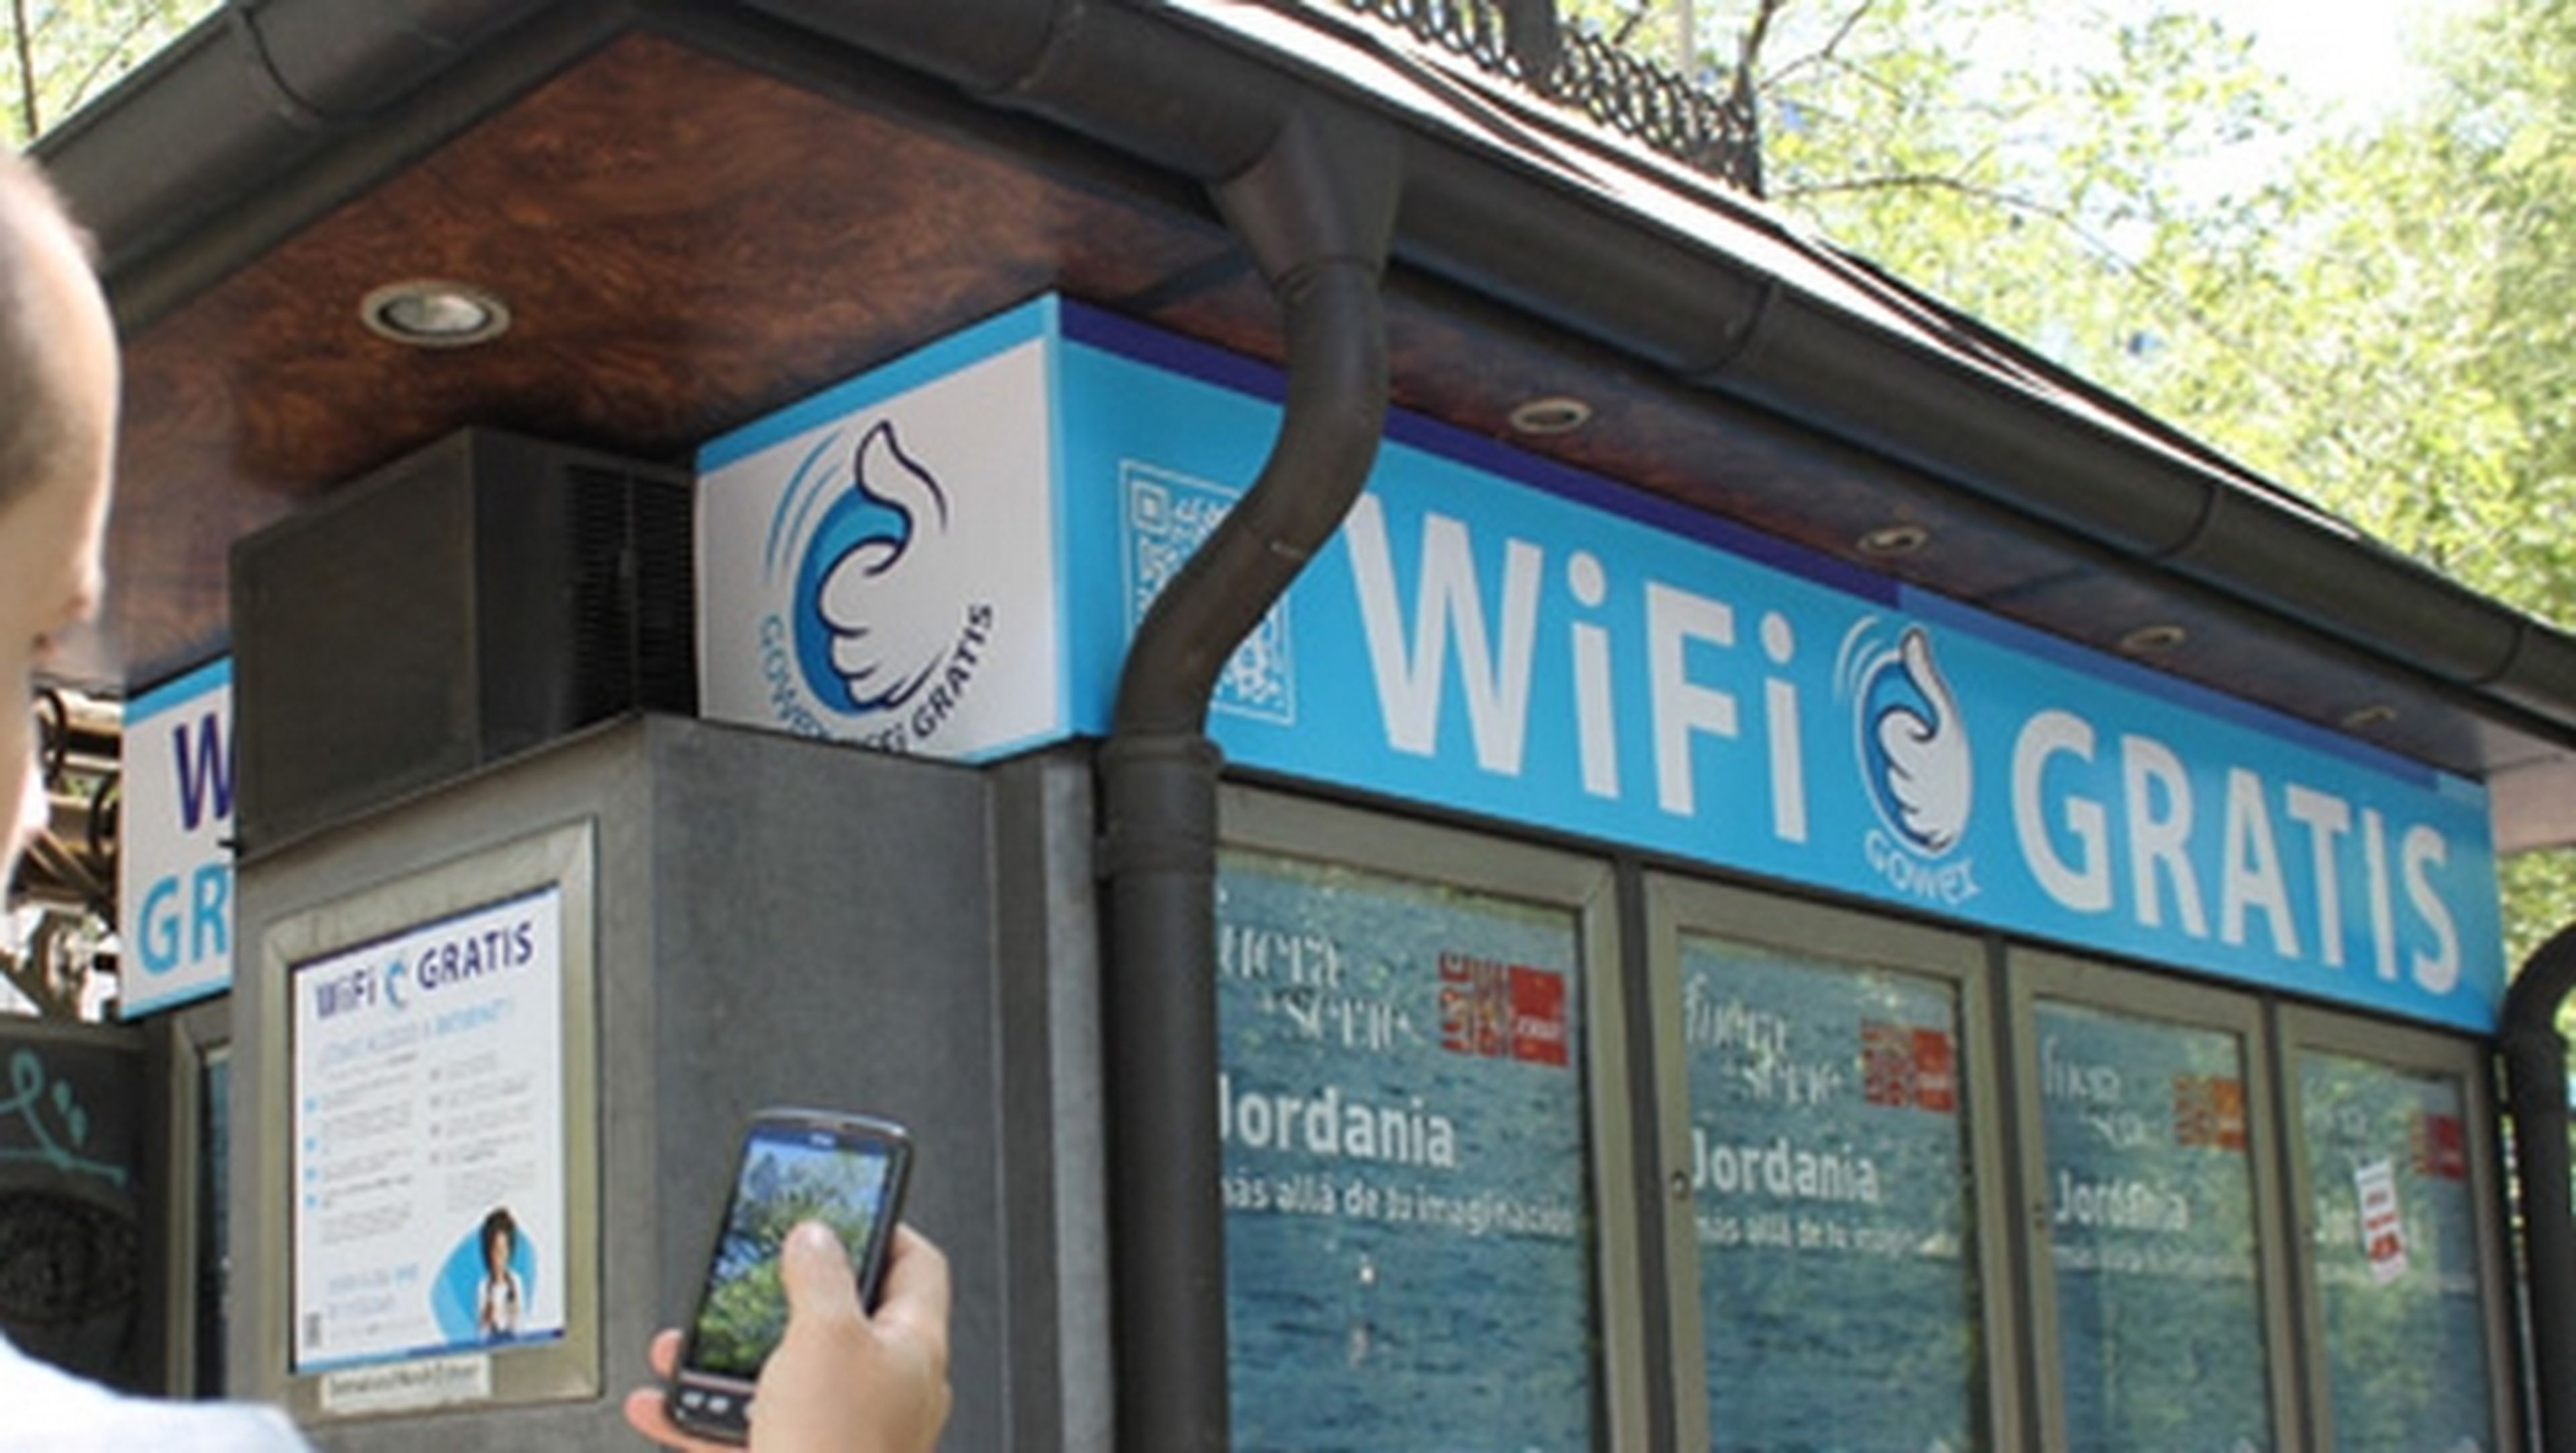 Los quioscos de Barcelona, en colaboración con GOWEX, ofrecerán Wi-Fi gratis